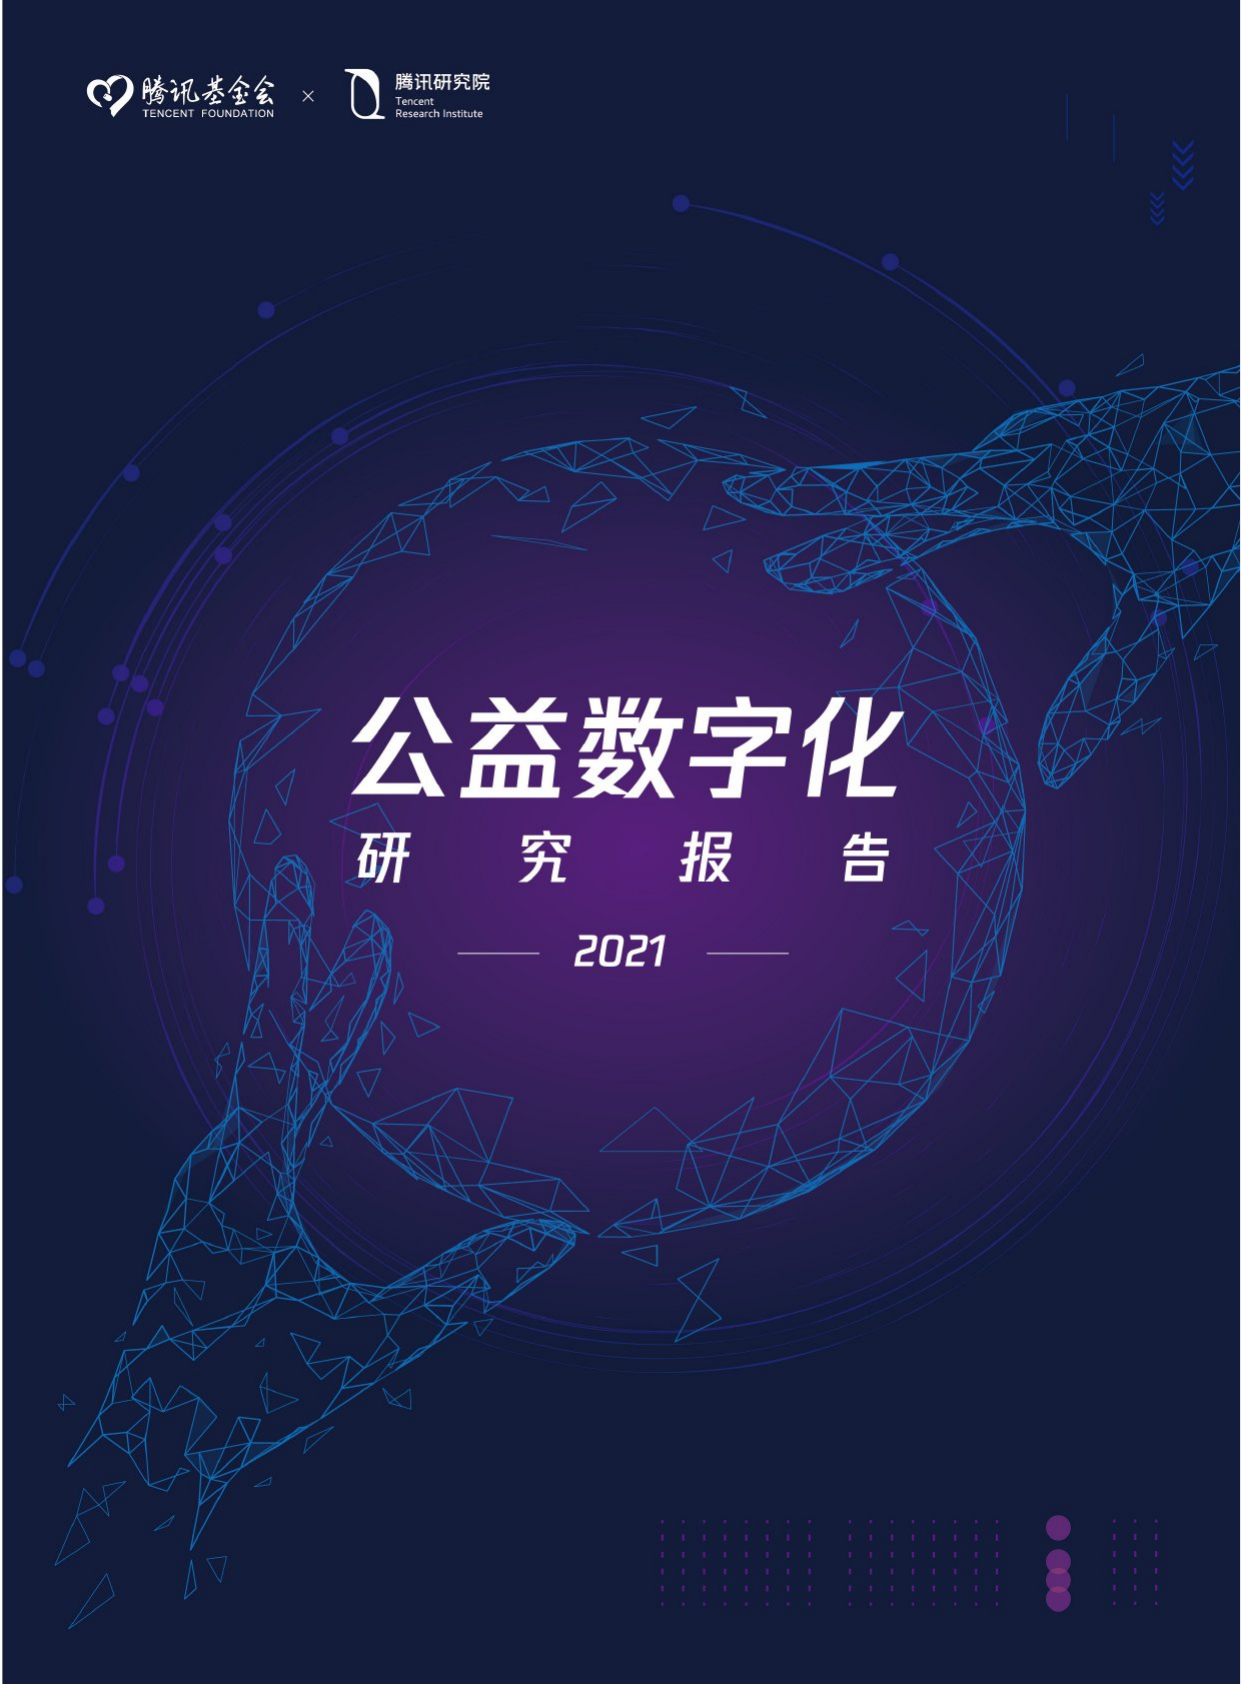 2021公益数字化转型-腾讯研究院-2021-56页